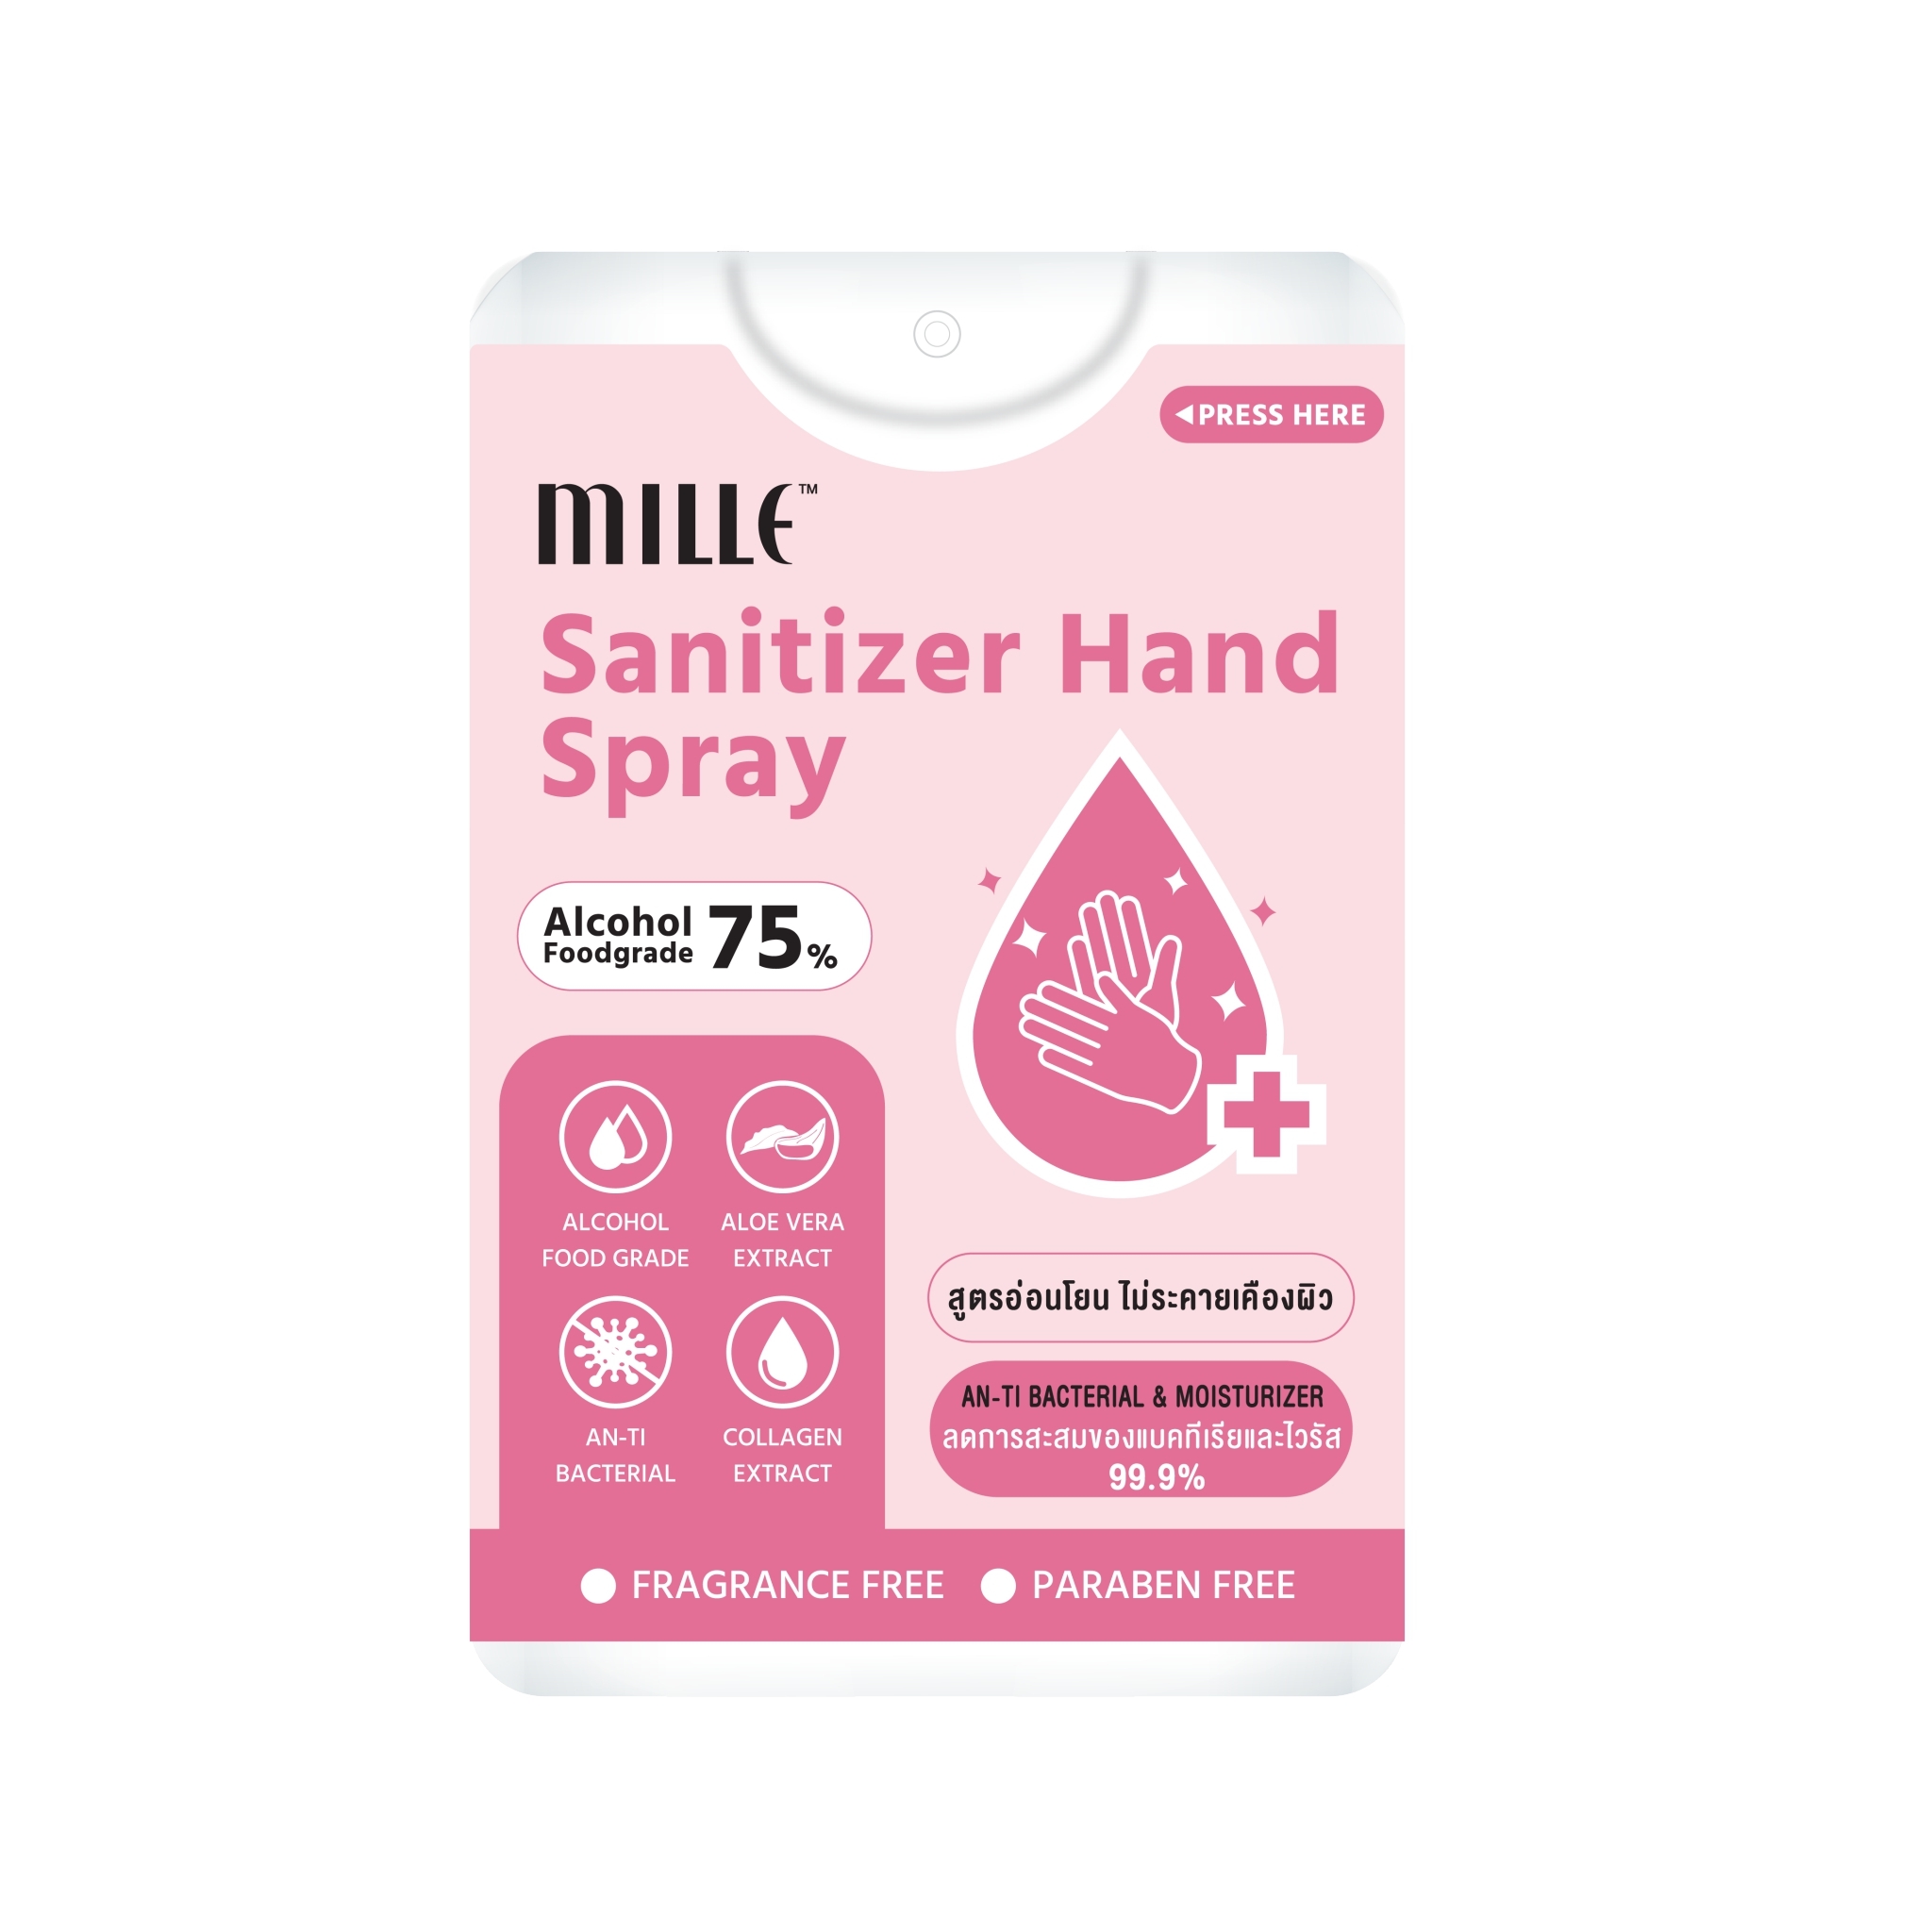 MILLE Sanitizer Hand Spray